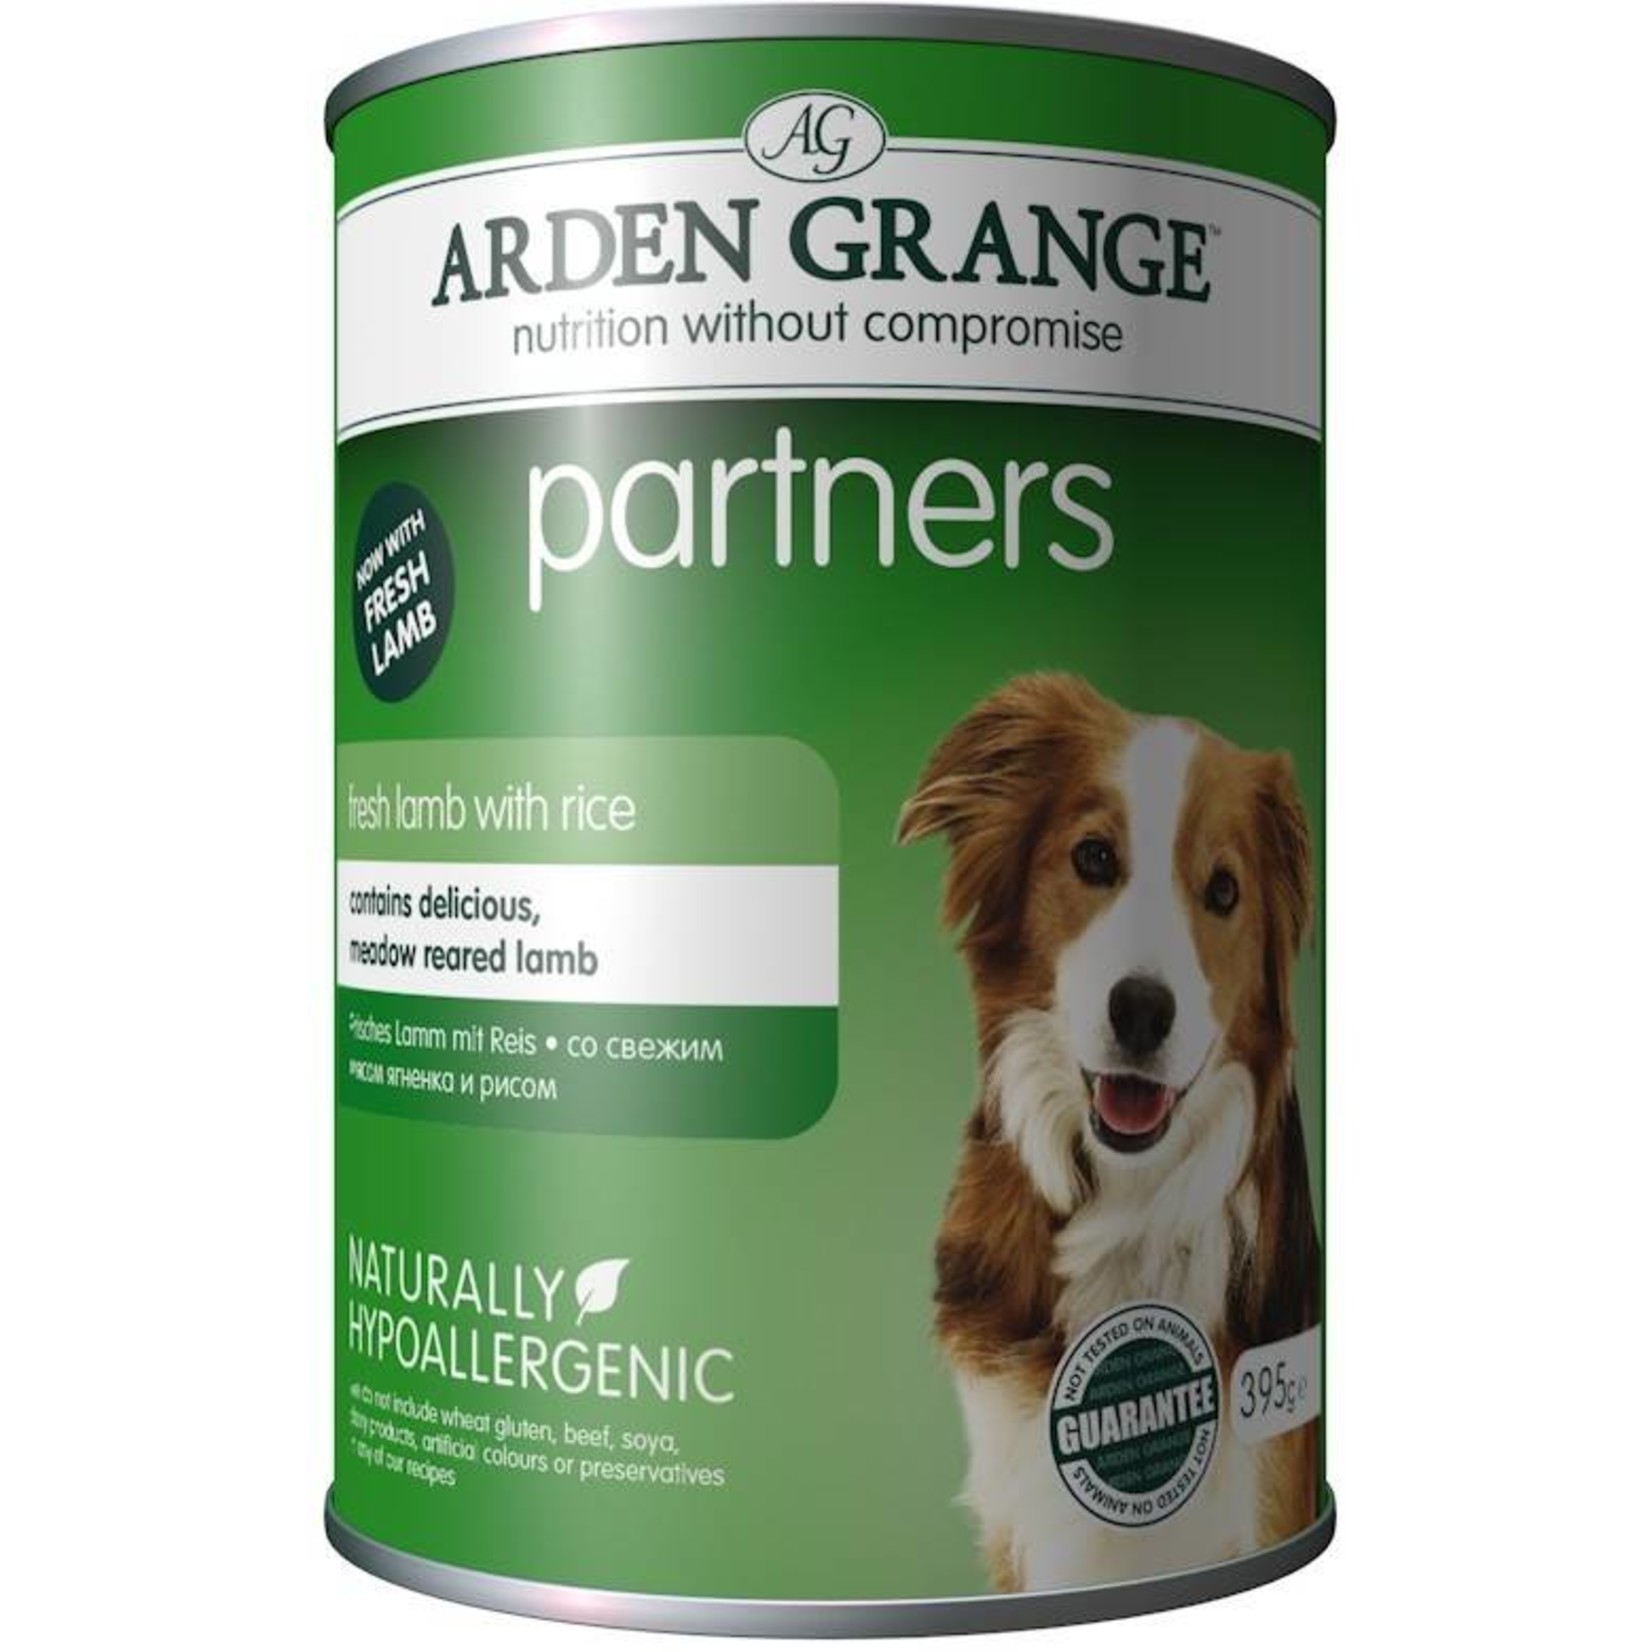 Arden Grange Partners Adult Wet Dog Food, Lamb, Rice & Vegetables 395g